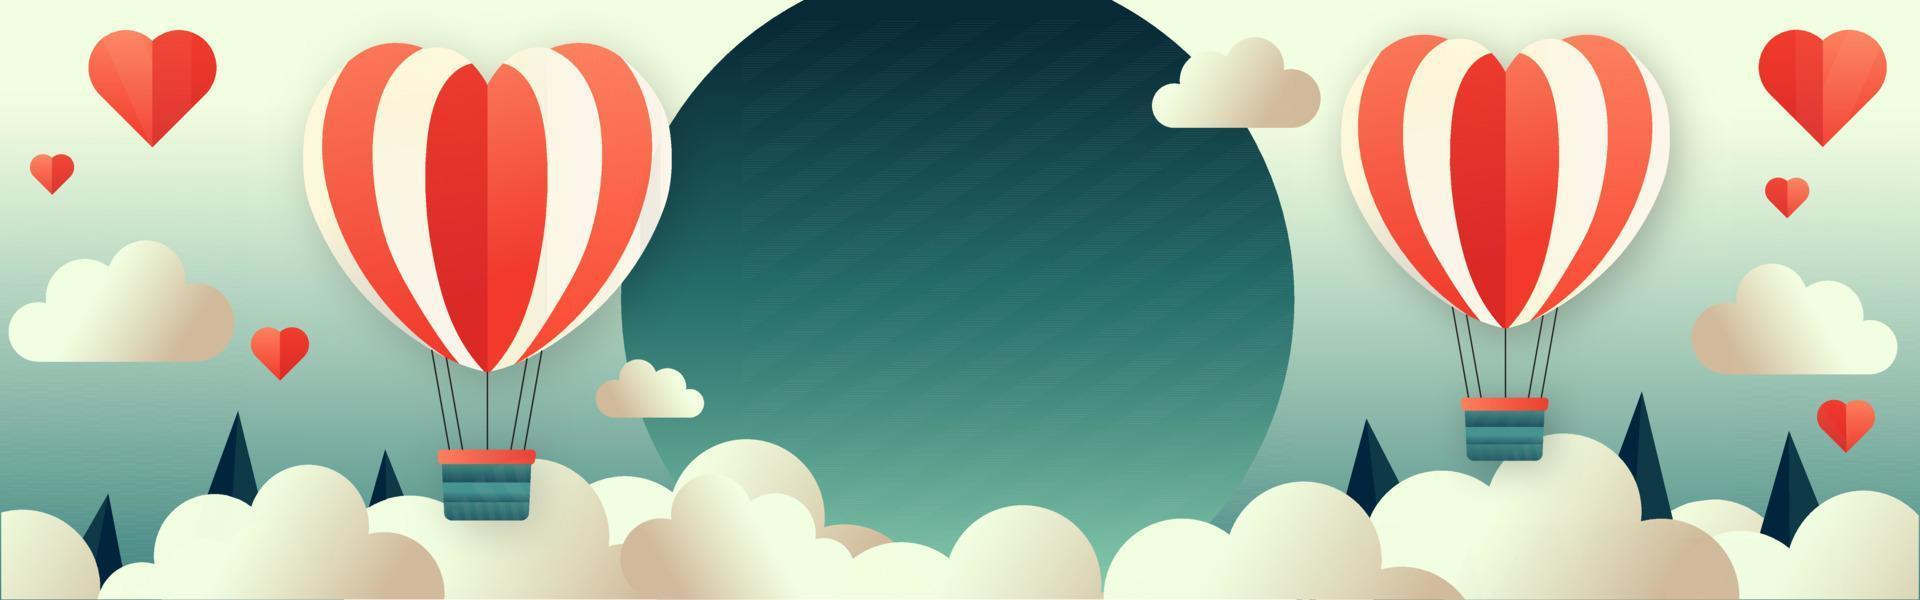 Illustration von Herz gestalten Luftballons mit runden Rahmen auf Wolken, konisch Bäume Hintergrund. Liebe oder Valentinstag Tag Konzept. vektor